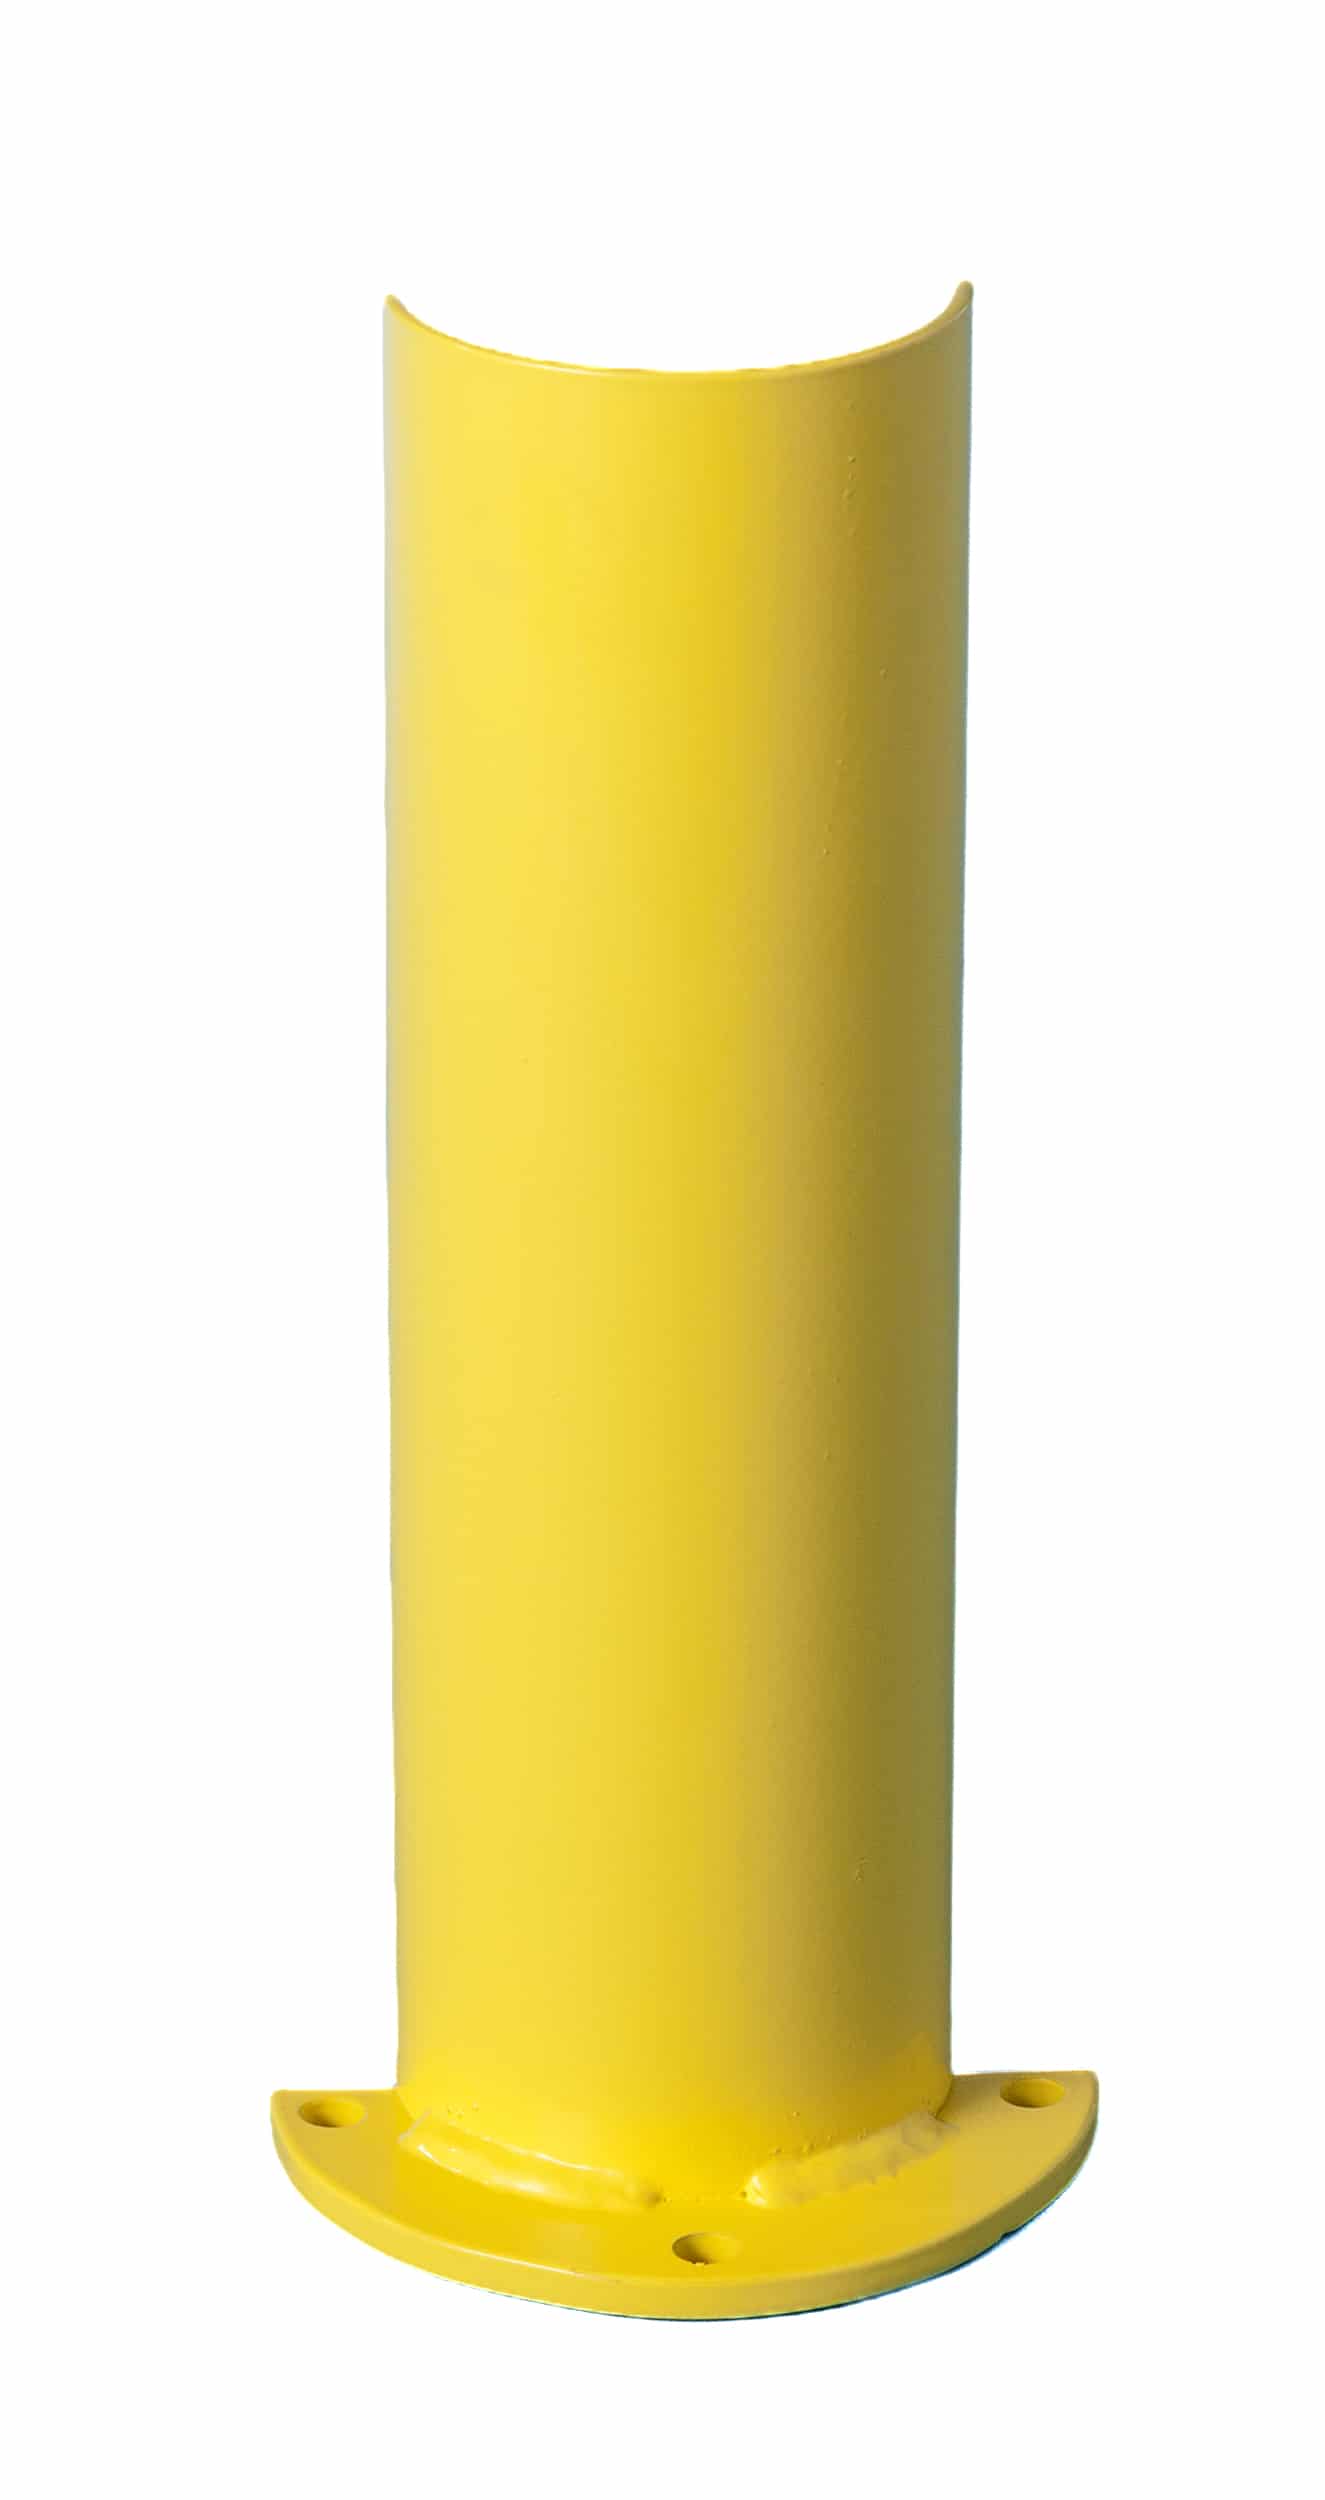 Protector metálico para estanterías industriales. De forma redonda y color amarillo.